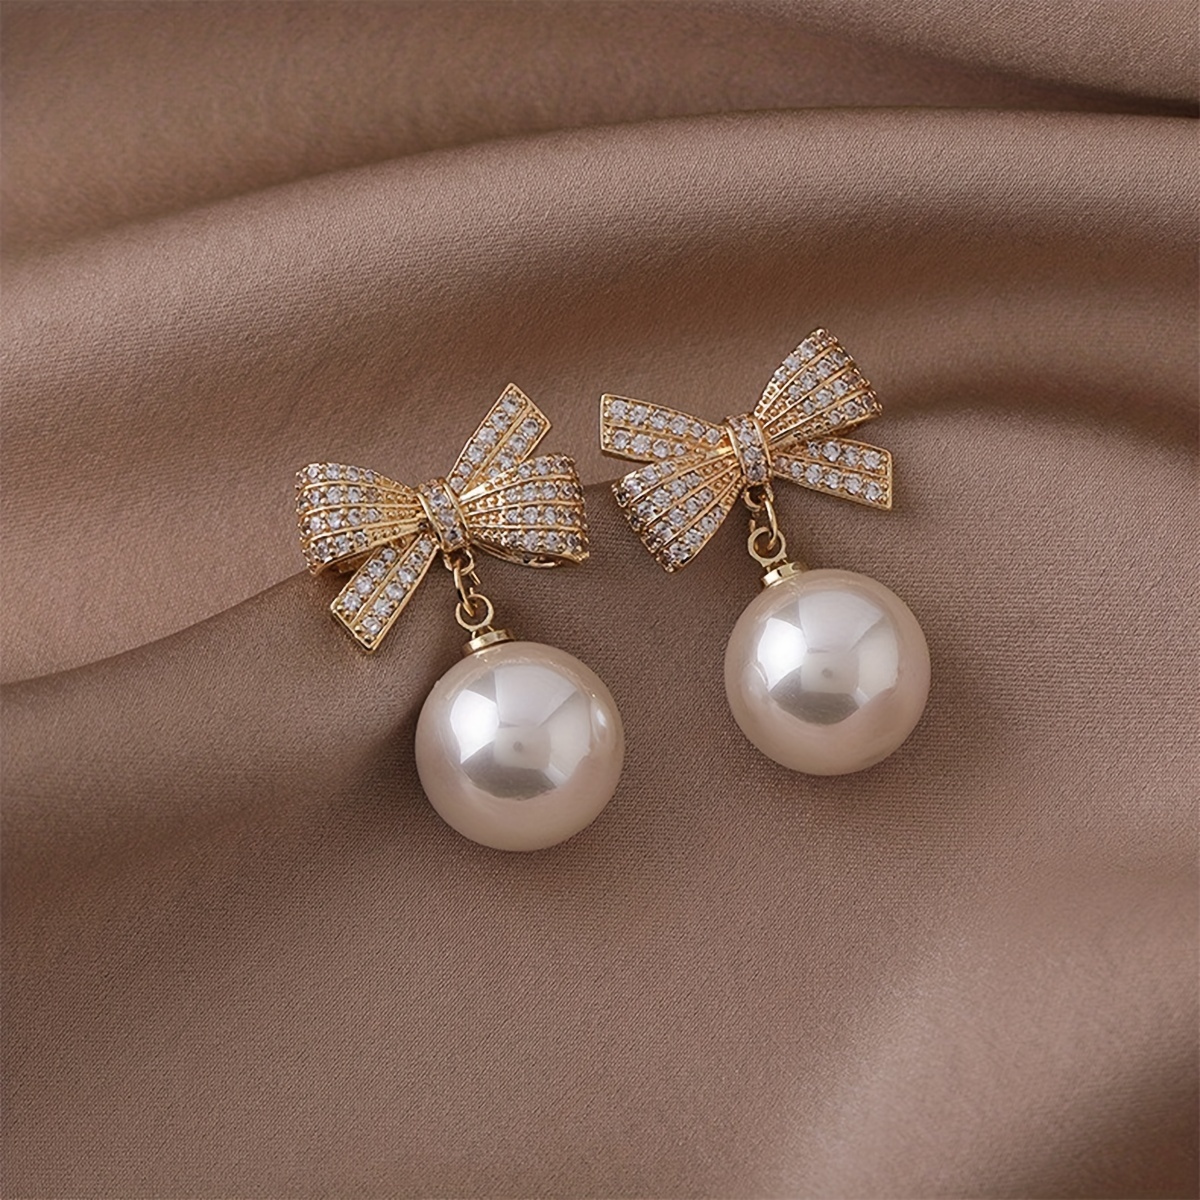 Rhinestone bow earrings - Party - Women